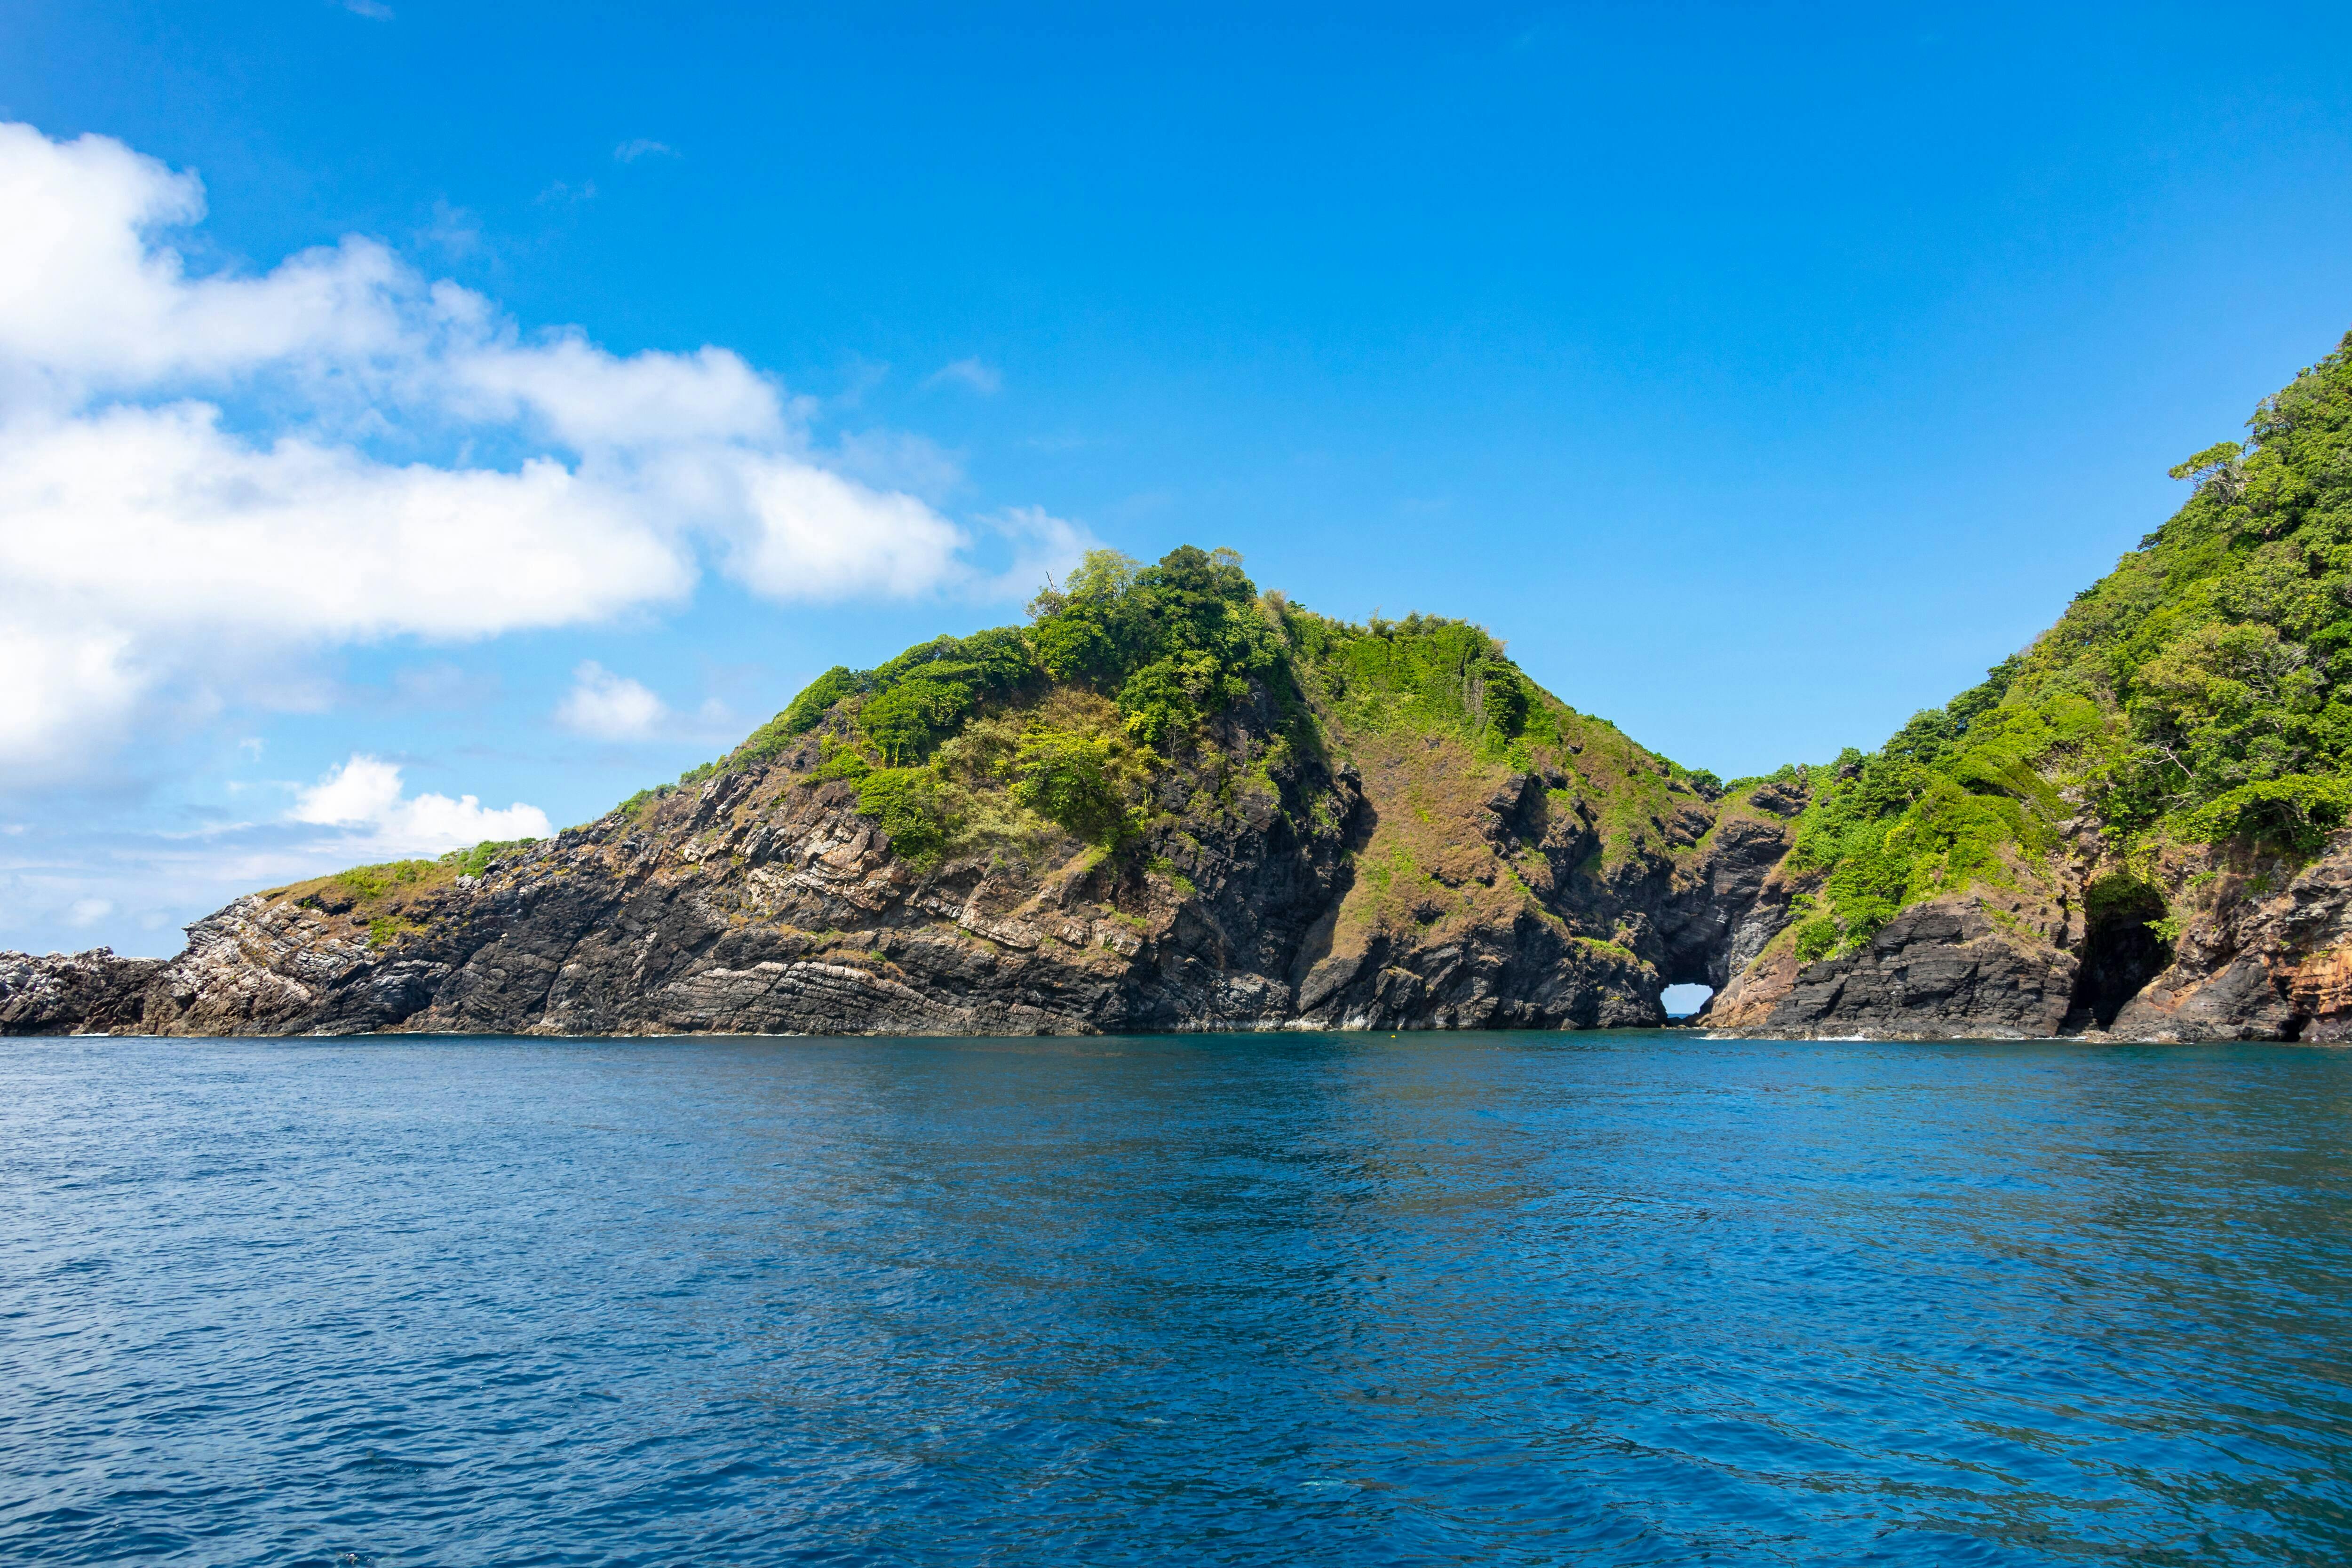 Similan Islands by Speedboat – Early Bird